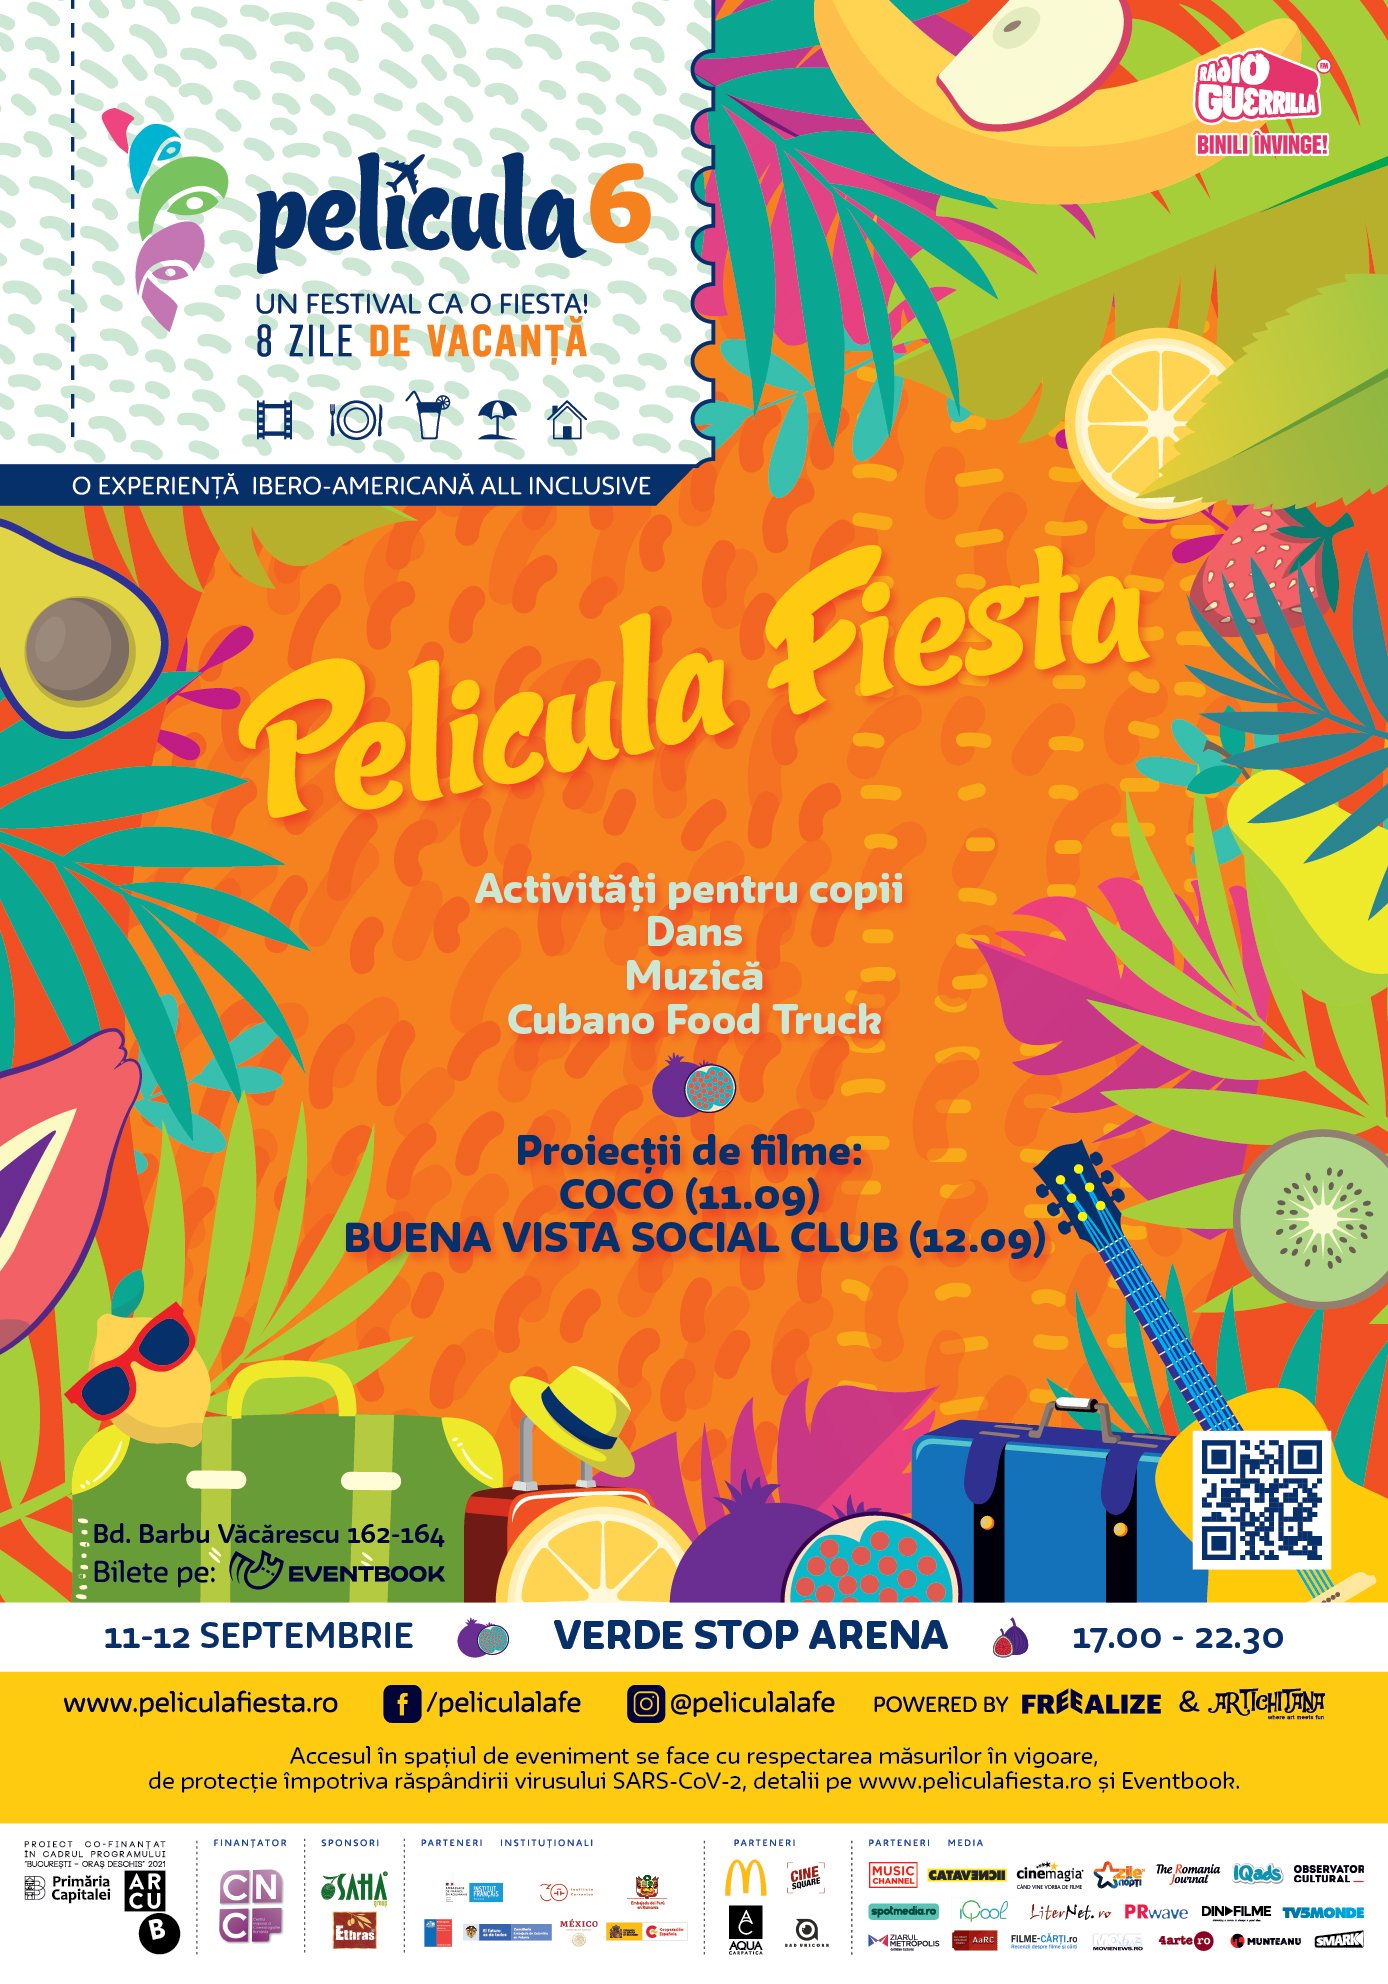 PELICULA 6 - IBERO AMERICAN FILM EXPERIENCE vă invită la Película Fiesta – film, dans și muzică pe 11 și 12 septembrie